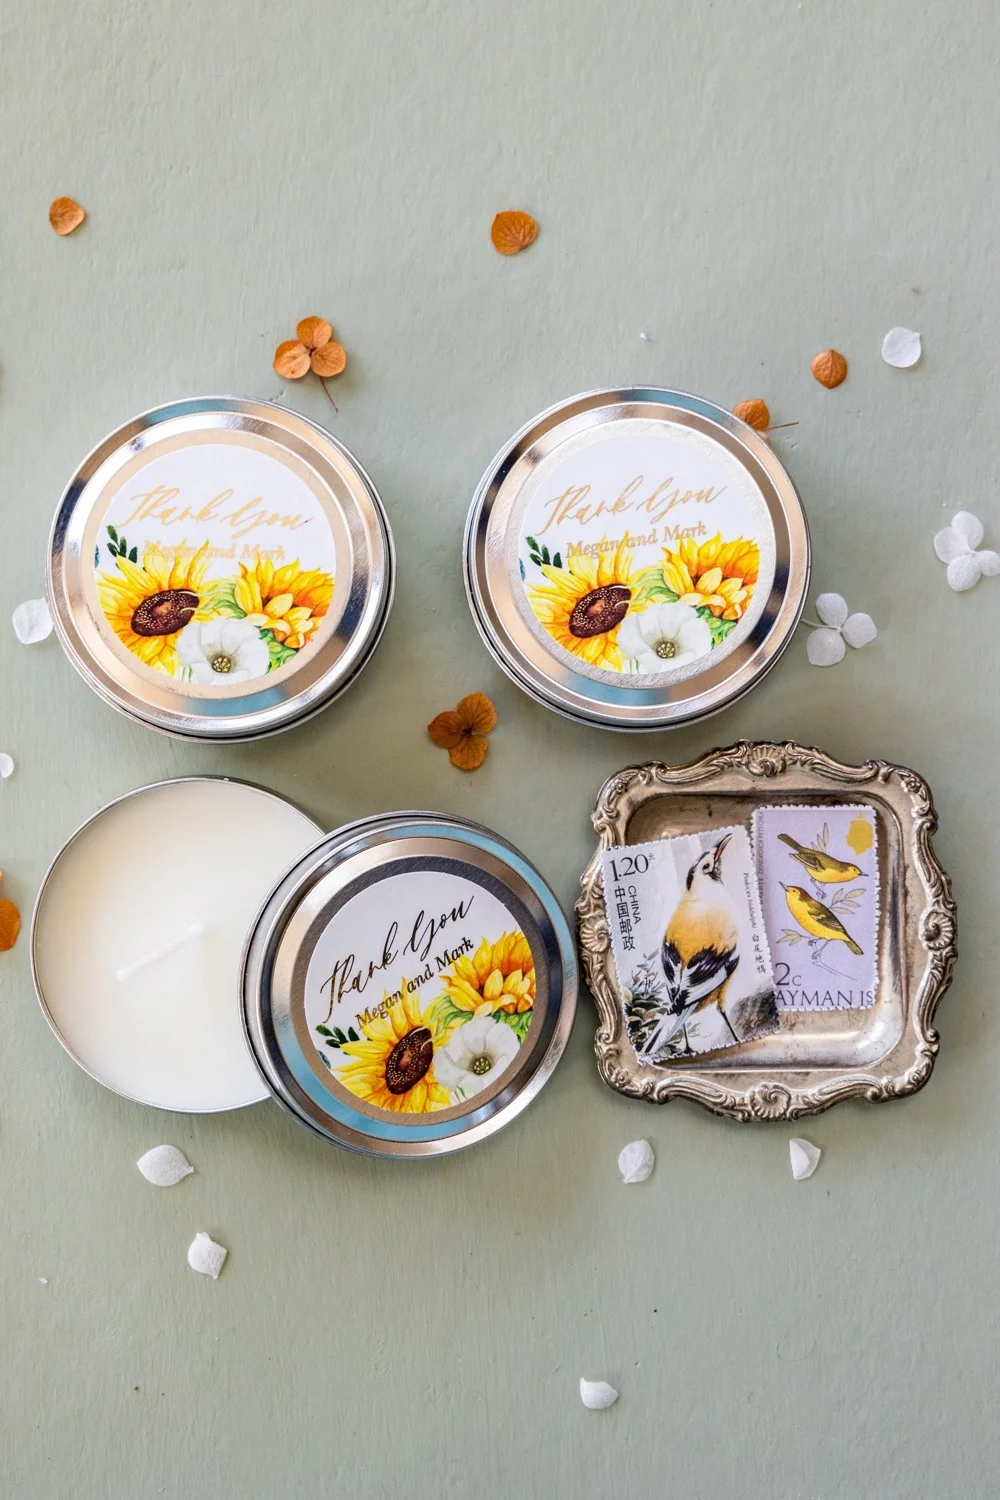 Handgefertigte Sojawachskerzen mit Goldtext und Sonnenblumen - Personalisierte Geschenke für Hochzeitsgäste - T7